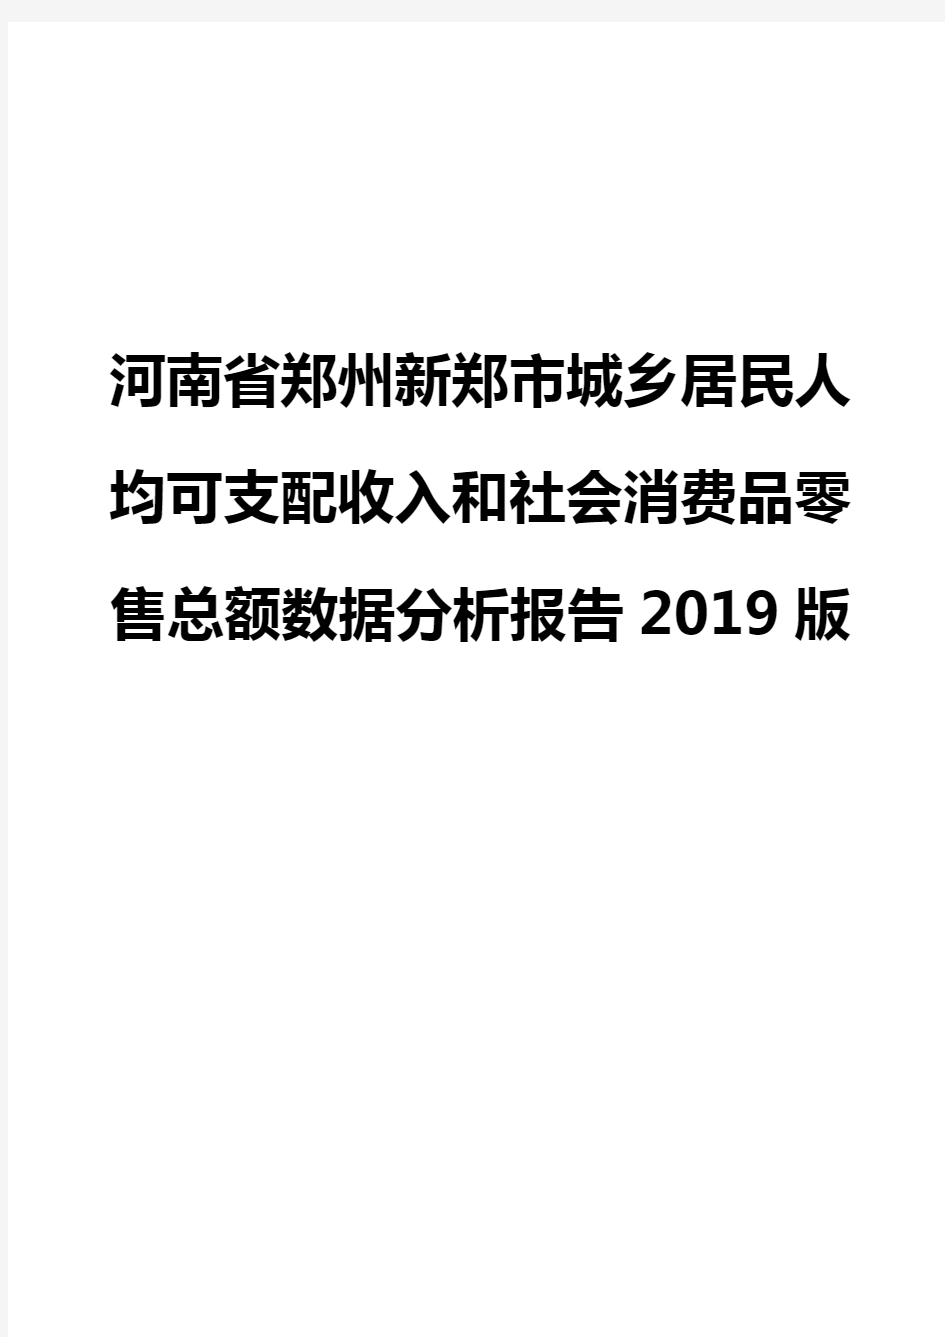 河南省郑州新郑市城乡居民人均可支配收入和社会消费品零售总额数据分析报告2019版